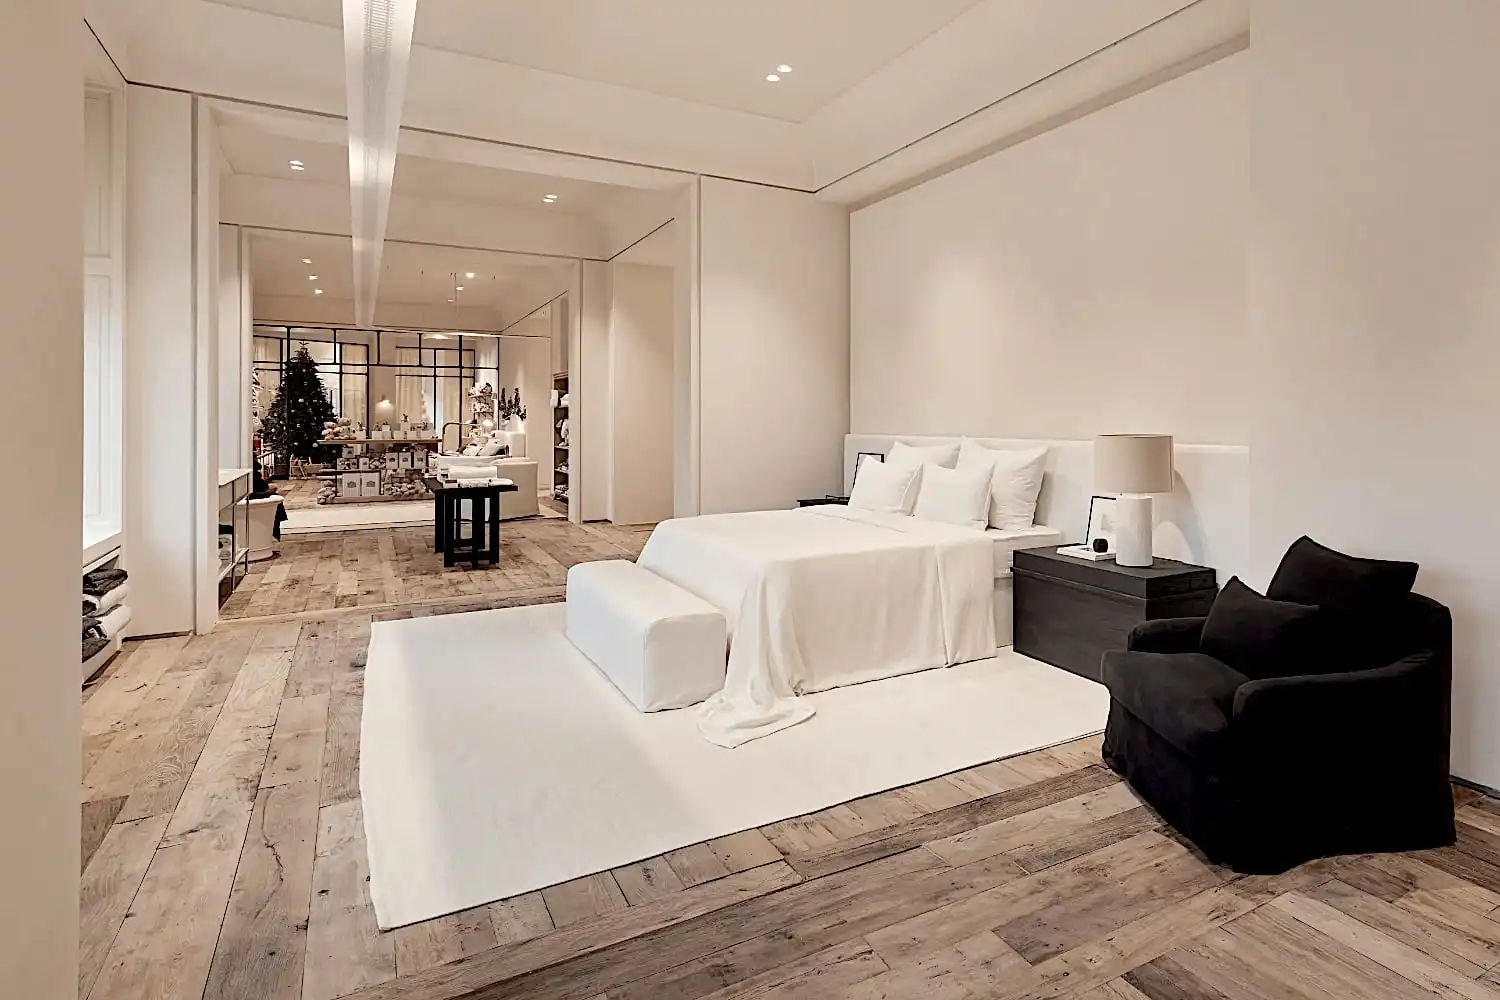 Une chambre spacieuse avec un grand lit blanc, des tables de chevet noires et un fauteuil au sol châtaignier. Un tapis se trouve sous le lit et un espace de vie ouvert est visible en arrière-plan.